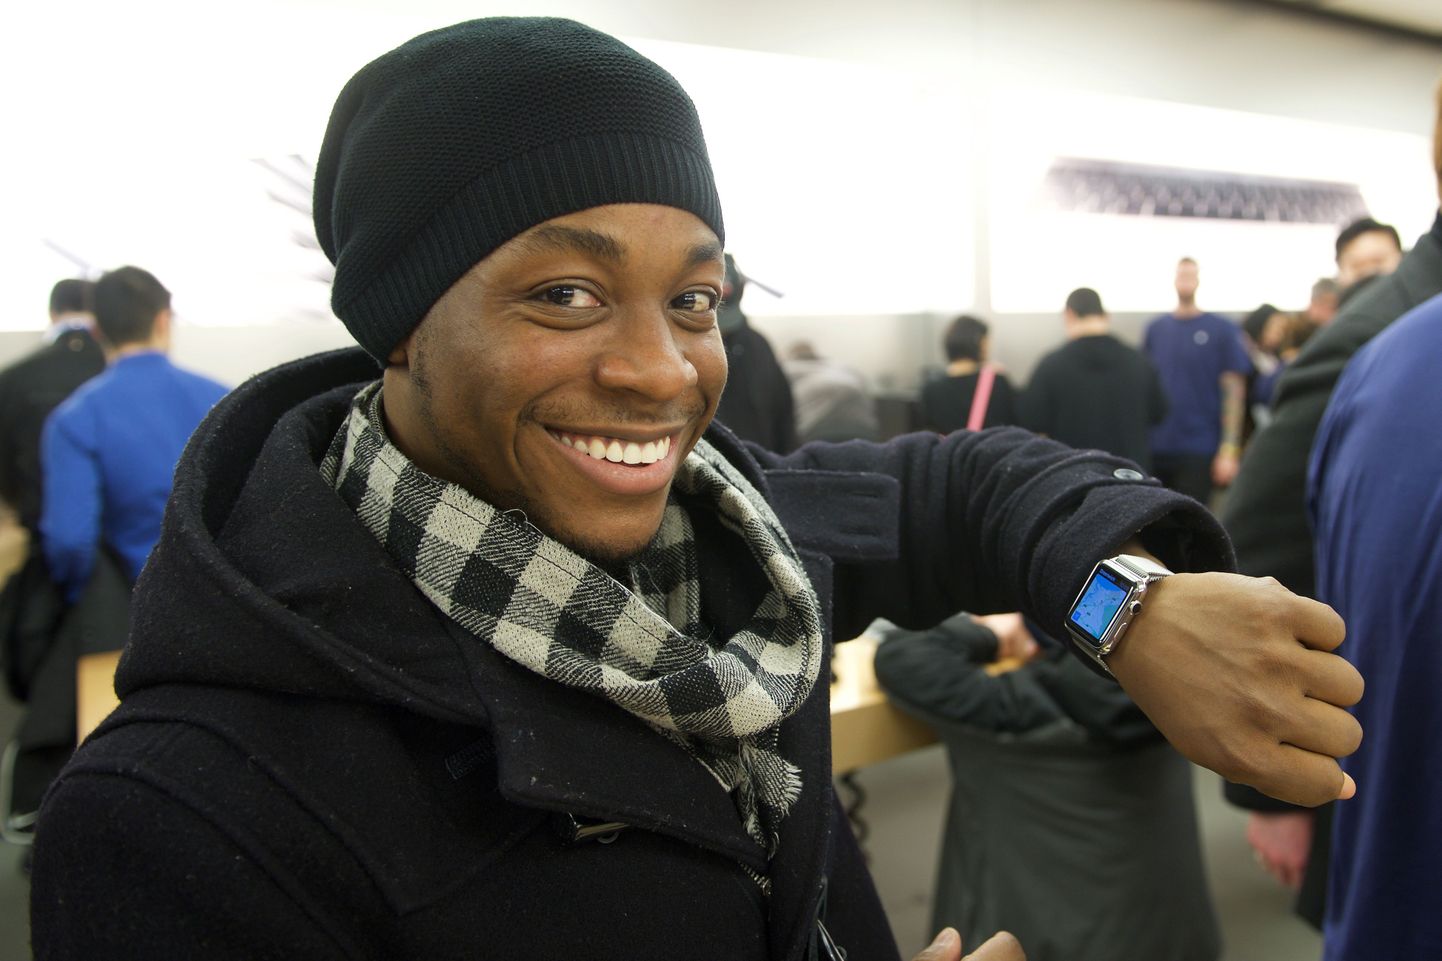 Esimesed huvilised on praeguseks saanud juba Apple Watchi käele proovida ning tellimuse sisse anda. Pildil õnnelike kella proovija Torontos, Kanadas.